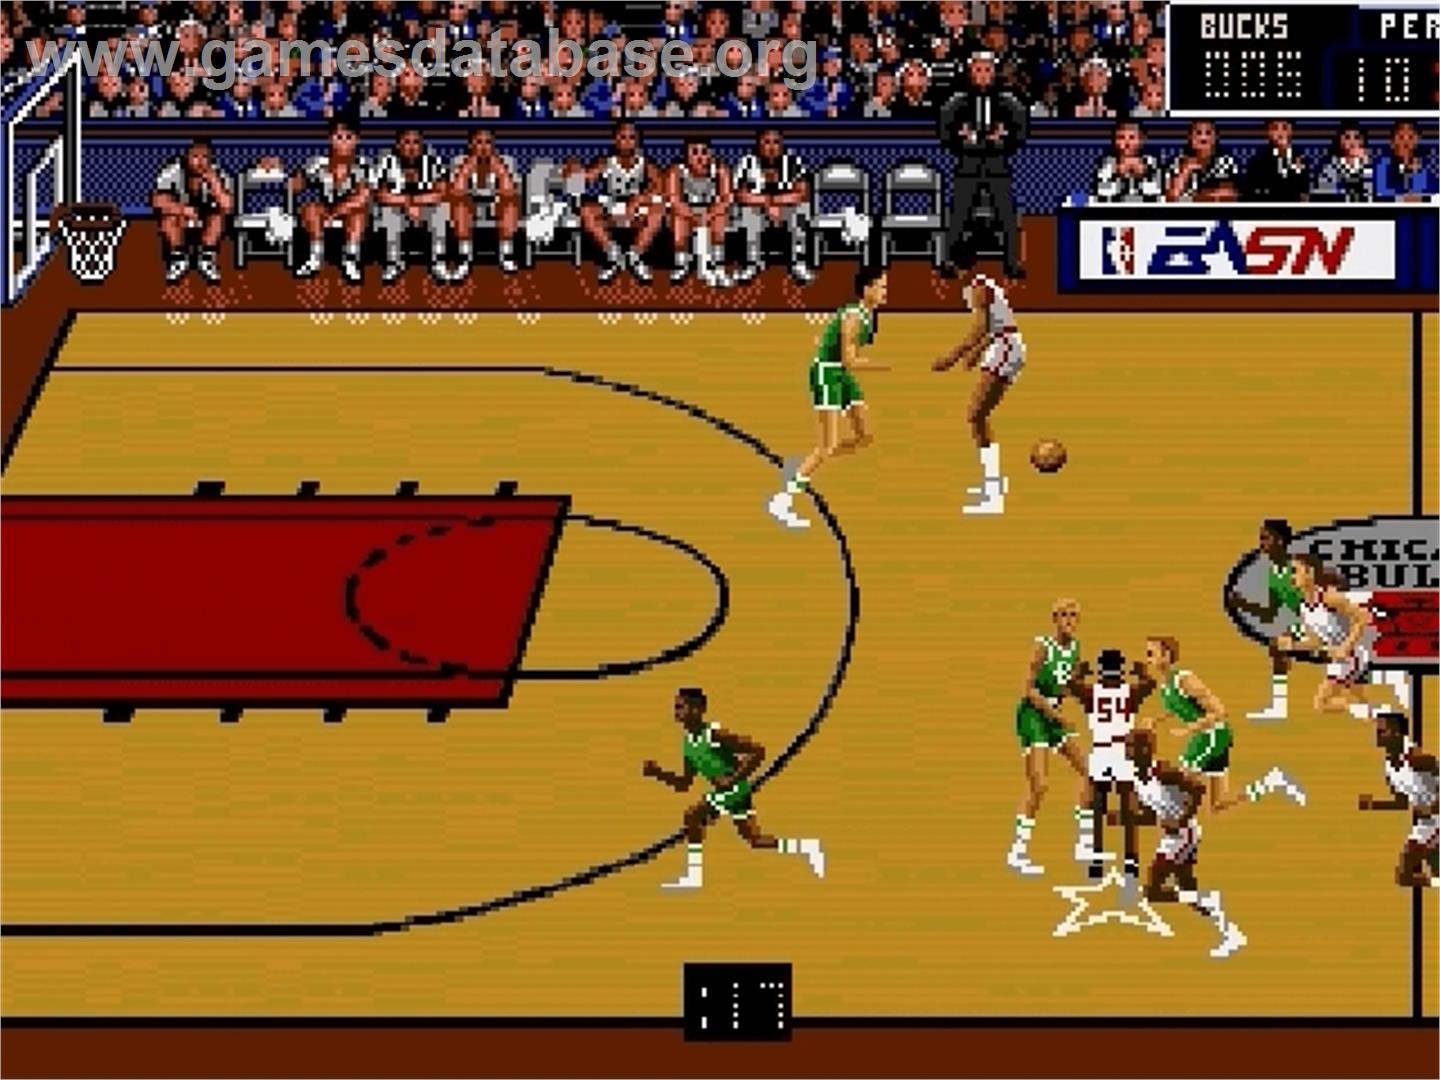 Bulls vs. Blazers and the NBA Playoffs - Sega Genesis - Artwork - In Game